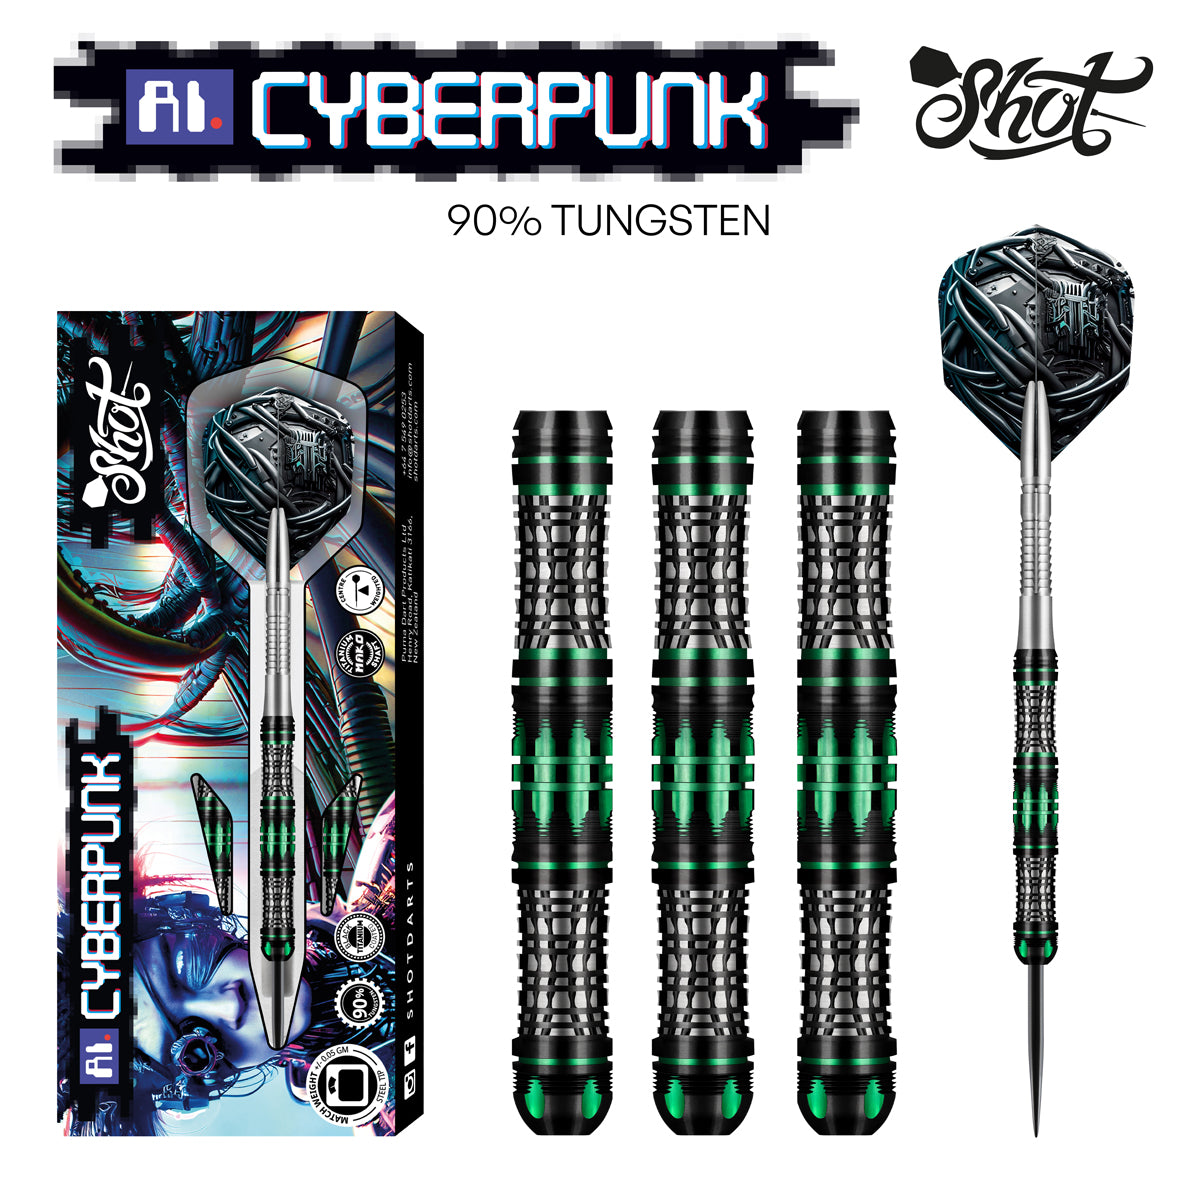 Shot AI Cyberpunk Steel Tip Dart Set 90% Tungsten Barrels 23g